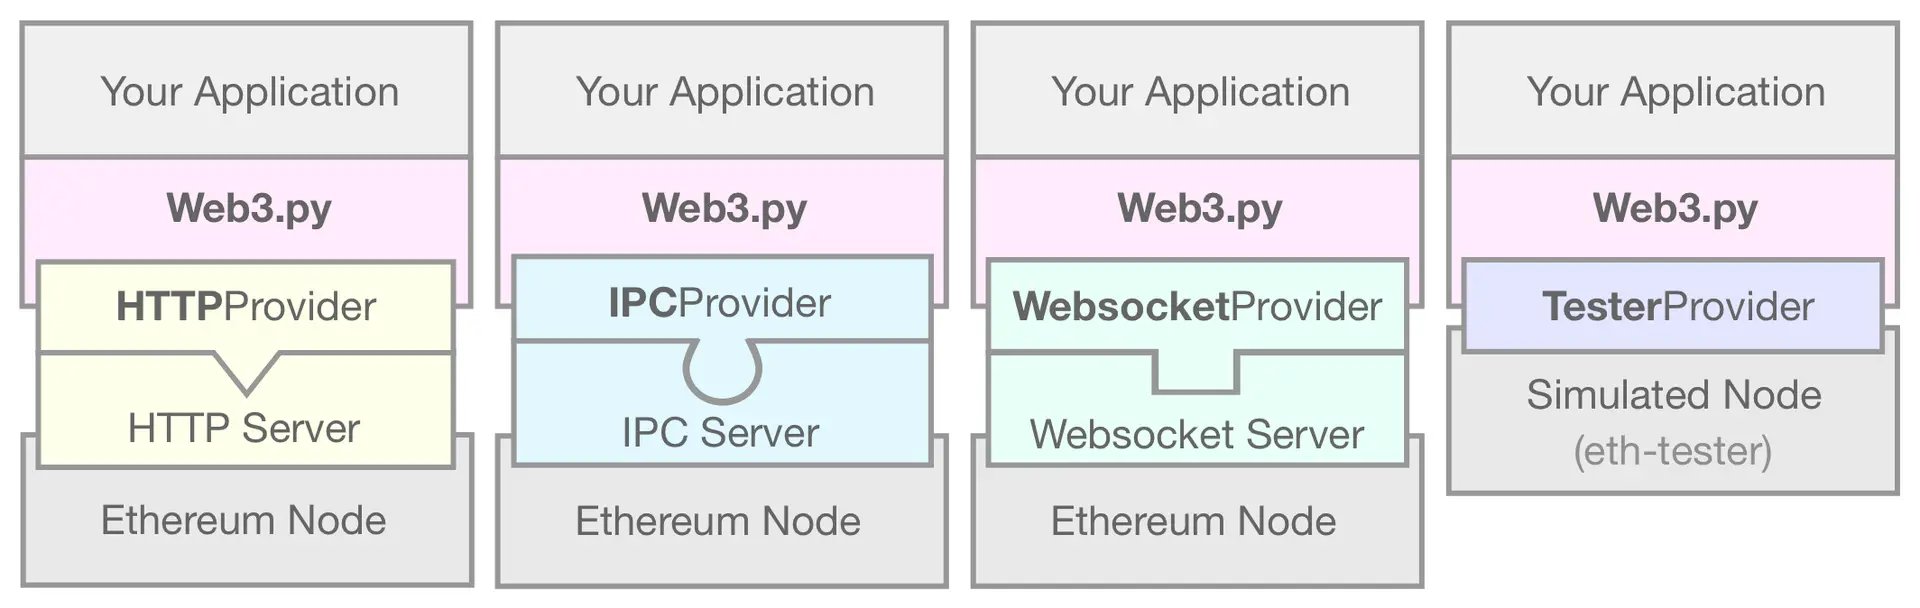 Web3.py uygulamanızı simüle edilmiş bir Ethereum düğümüne bağlayan EthereumTesterProvider'ı gösteren bir diyagram